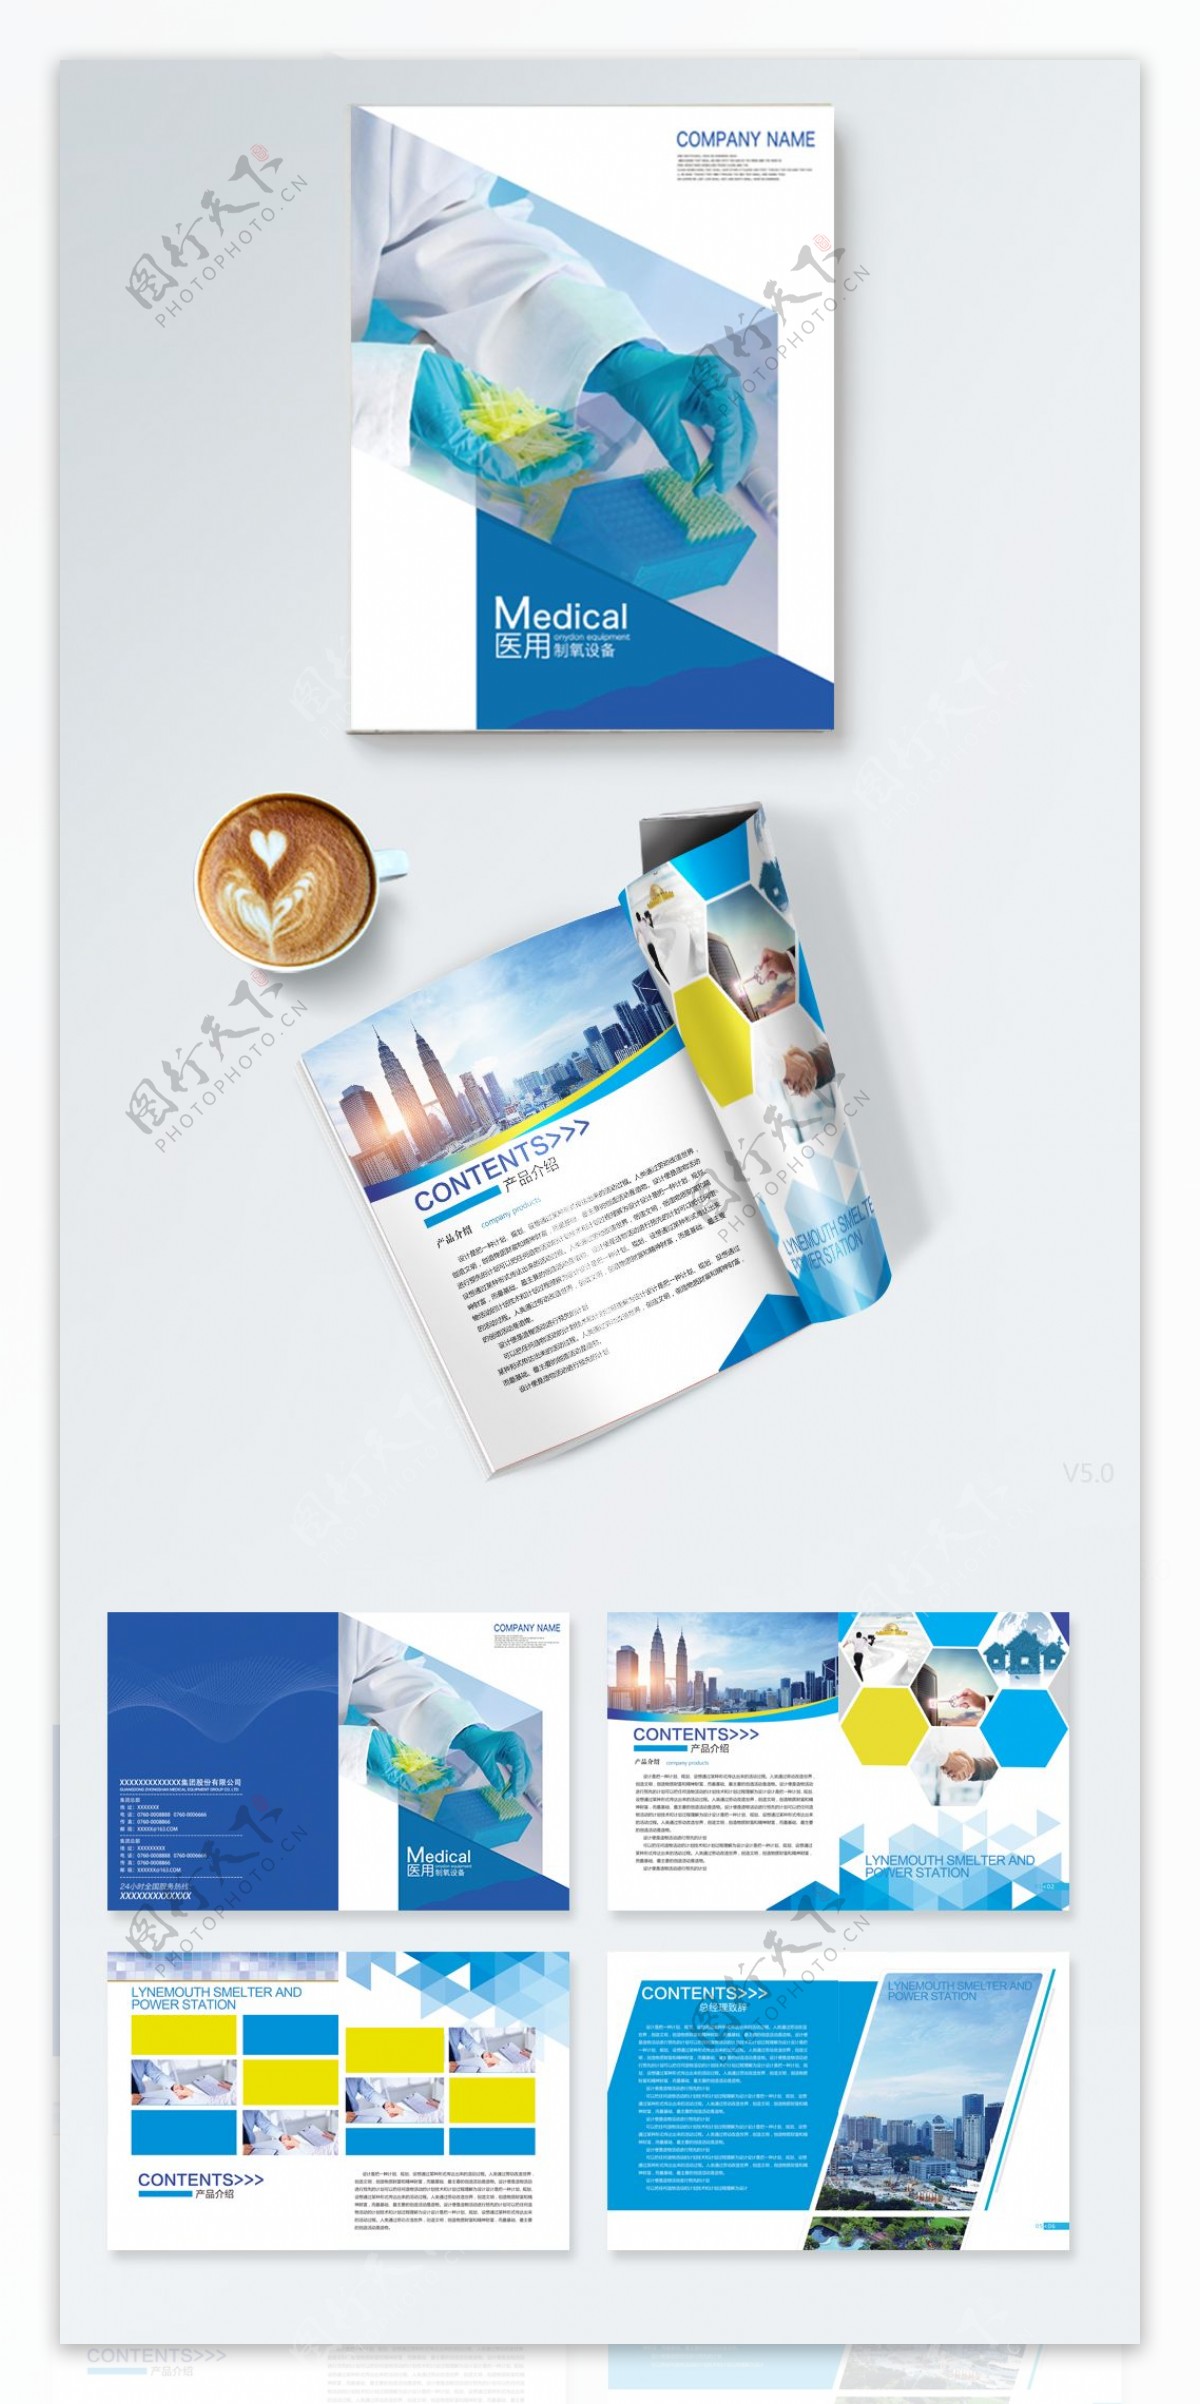 蓝色时尚商务风格的企业画册设计